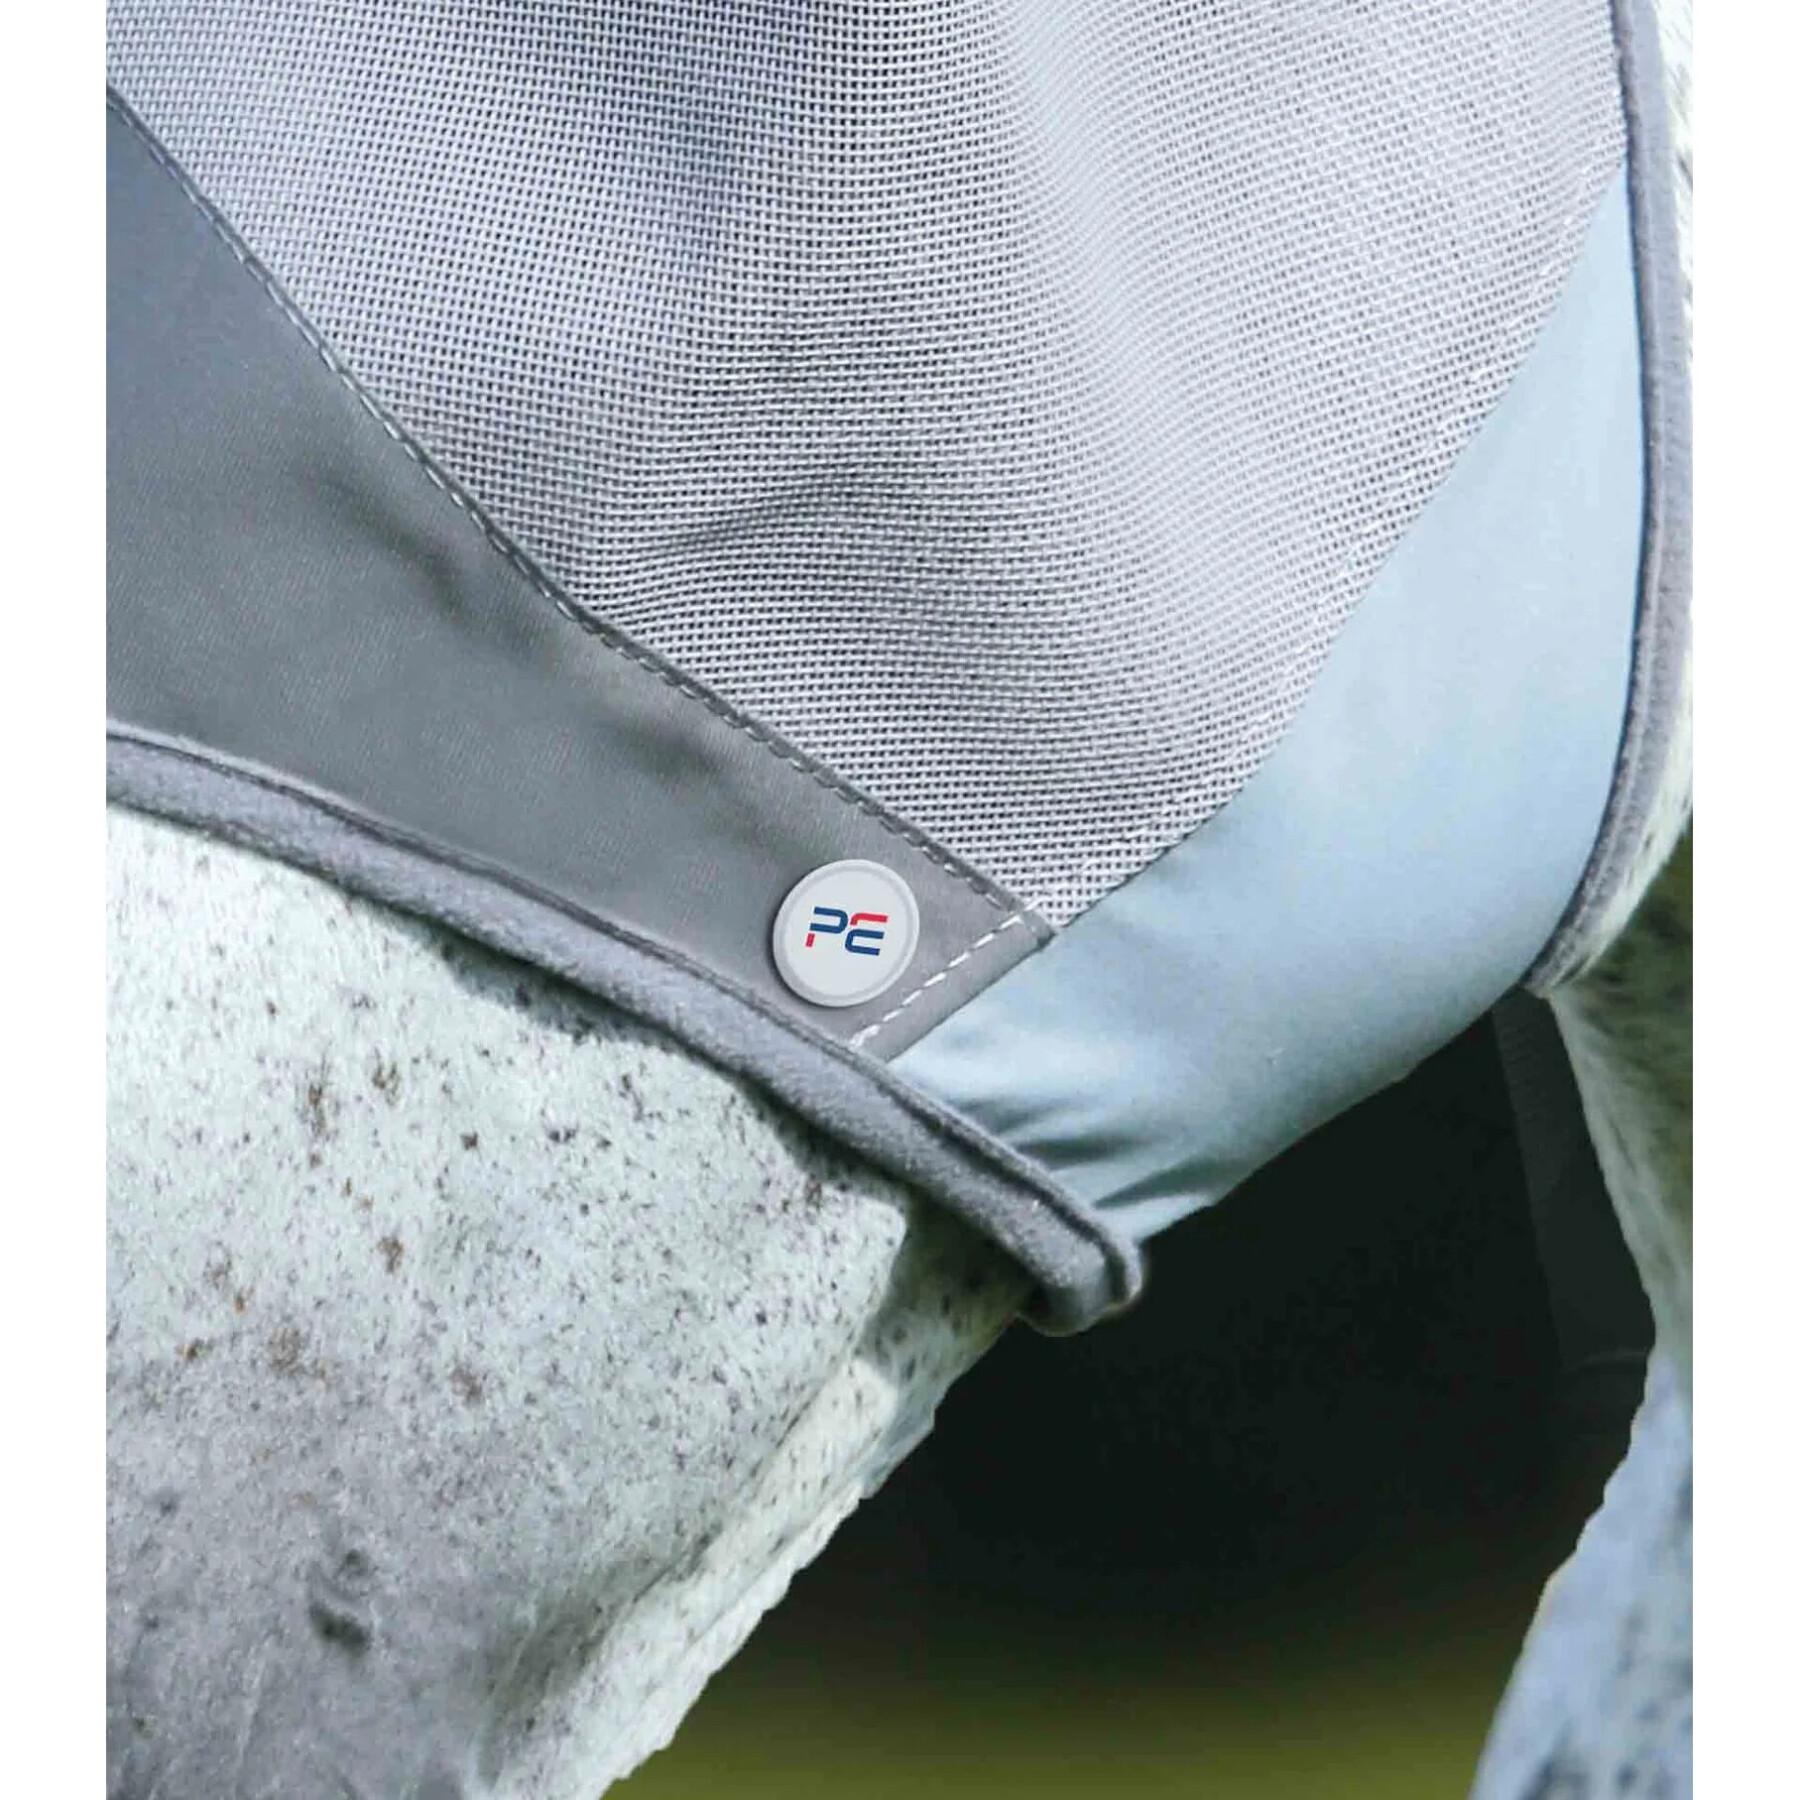 Anti-Vliegenmasker voor paarden Premier Equine Buster Standard